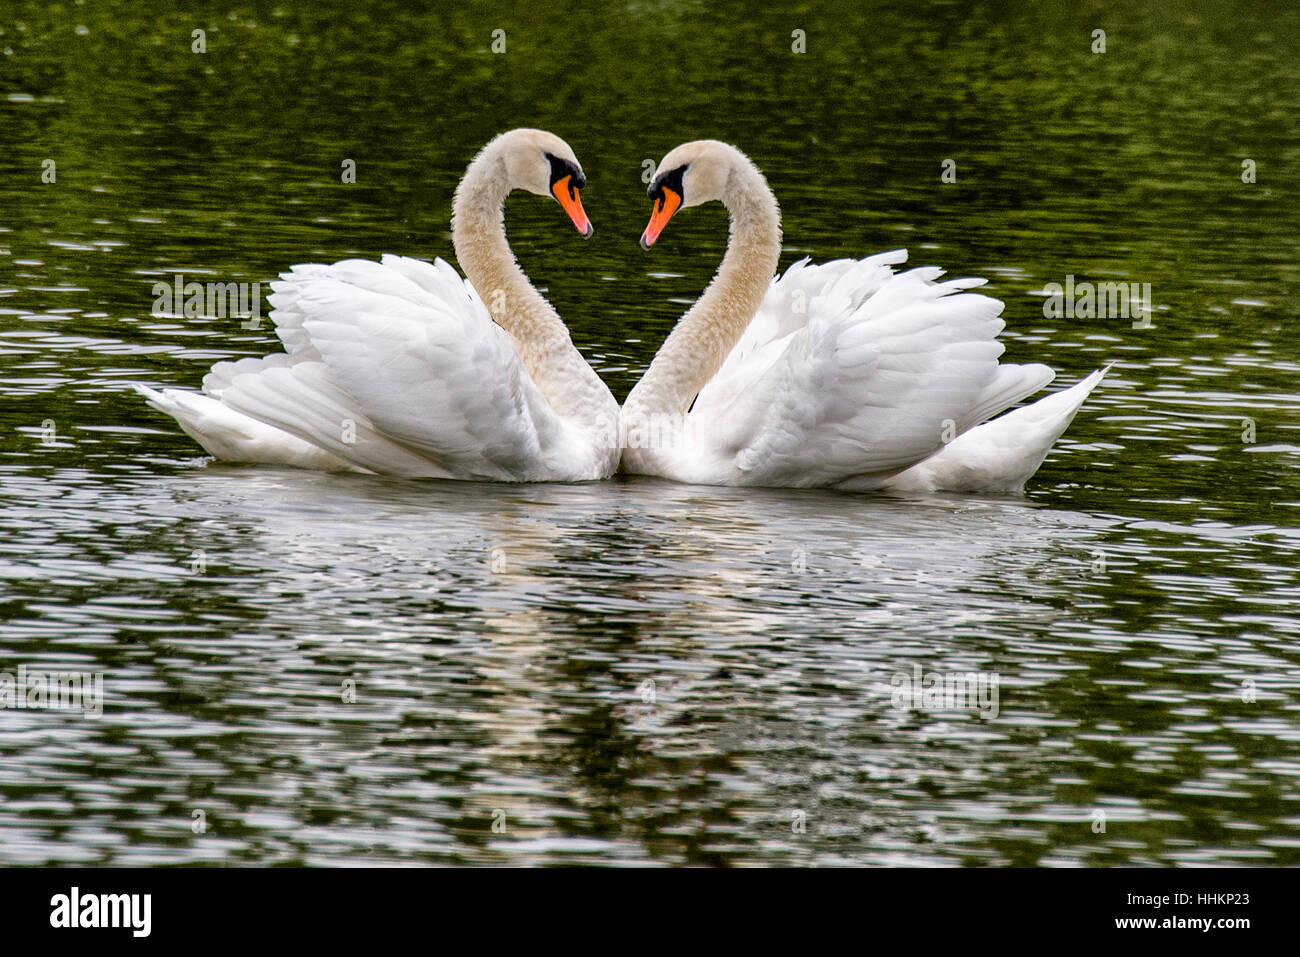 San Valentino amore Swans in Forma Di Cuore per amore San Valentino sweethearts, cuore perfetto amore, romantico come hanno formato una forma perfetta del cuore Foto Stock